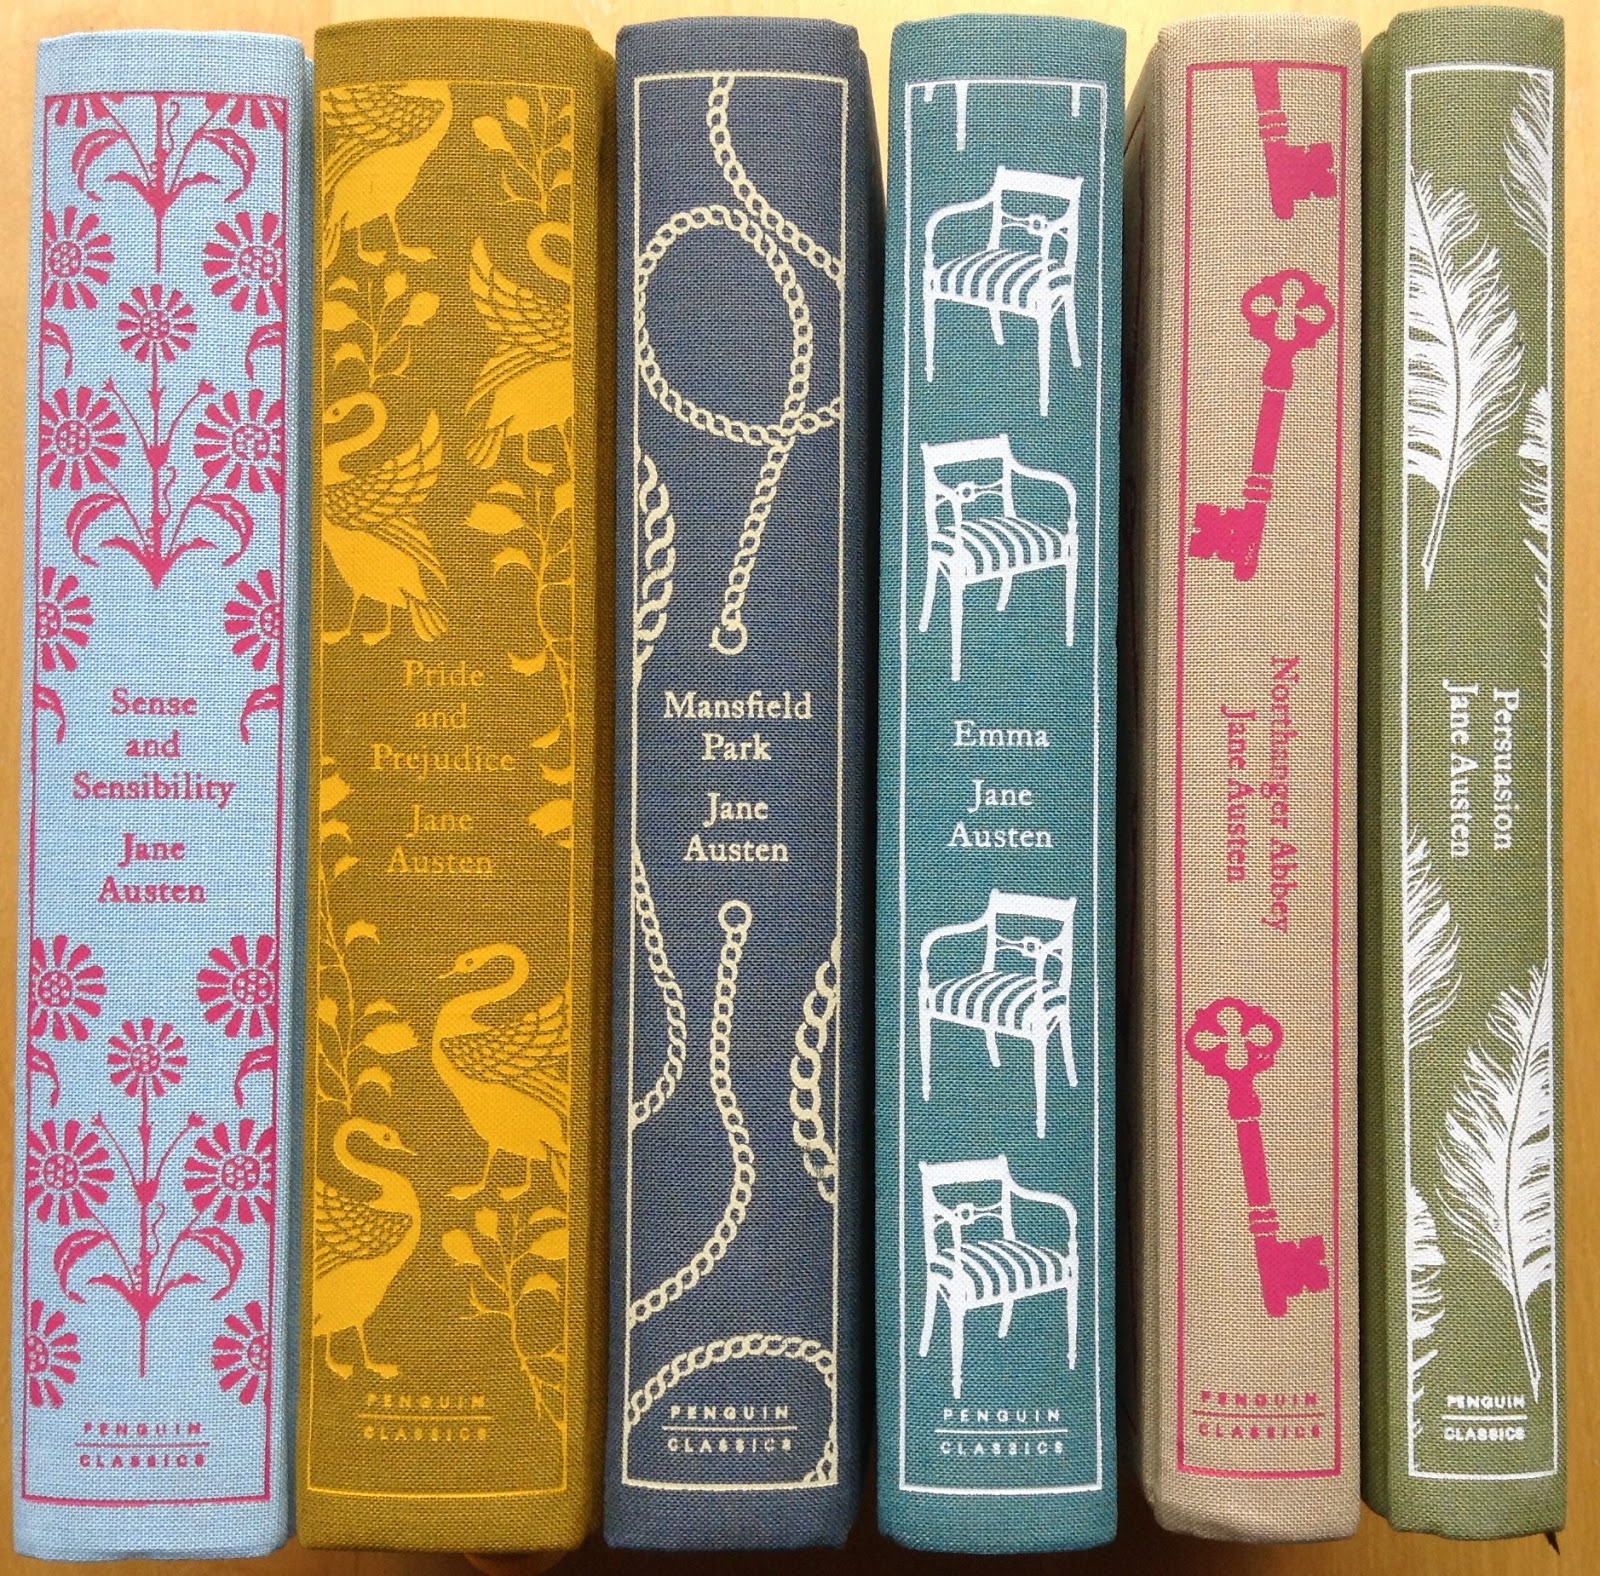 Book Spines - Clothbound Classics by Jane Austen